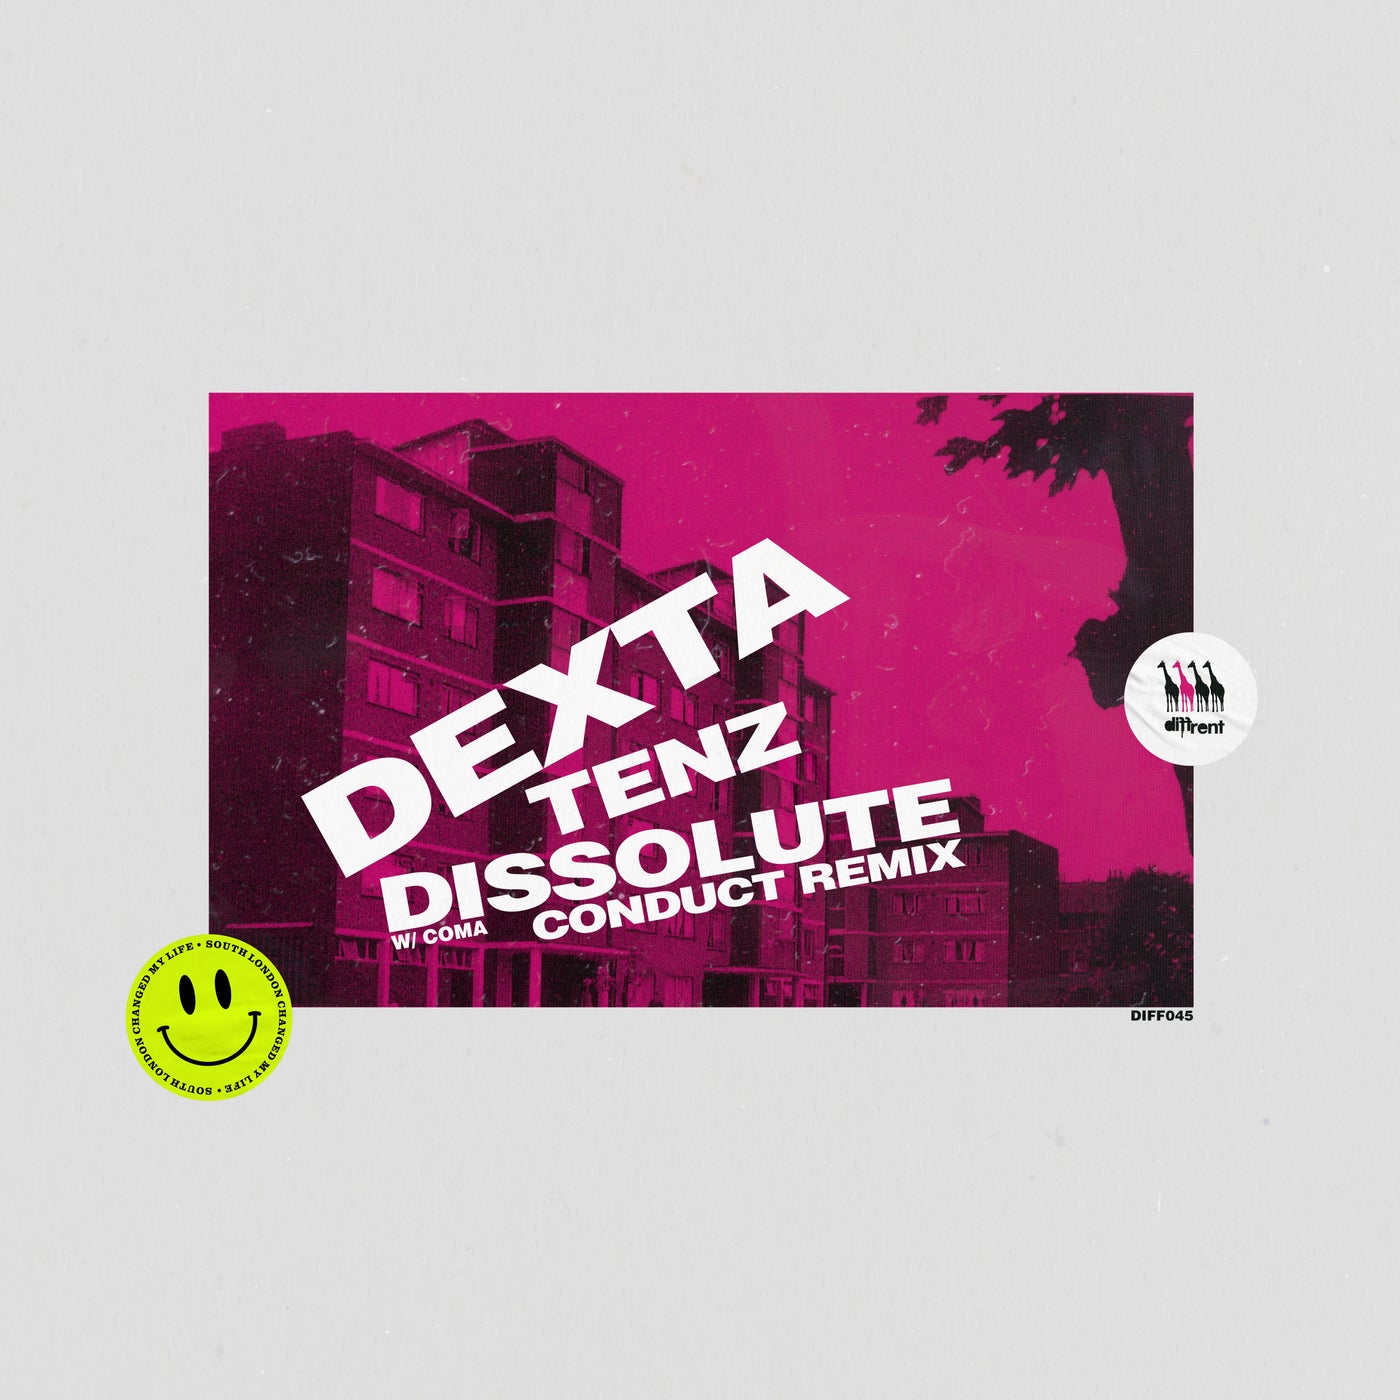 Tenz / Dissolute (Conduct Remix)